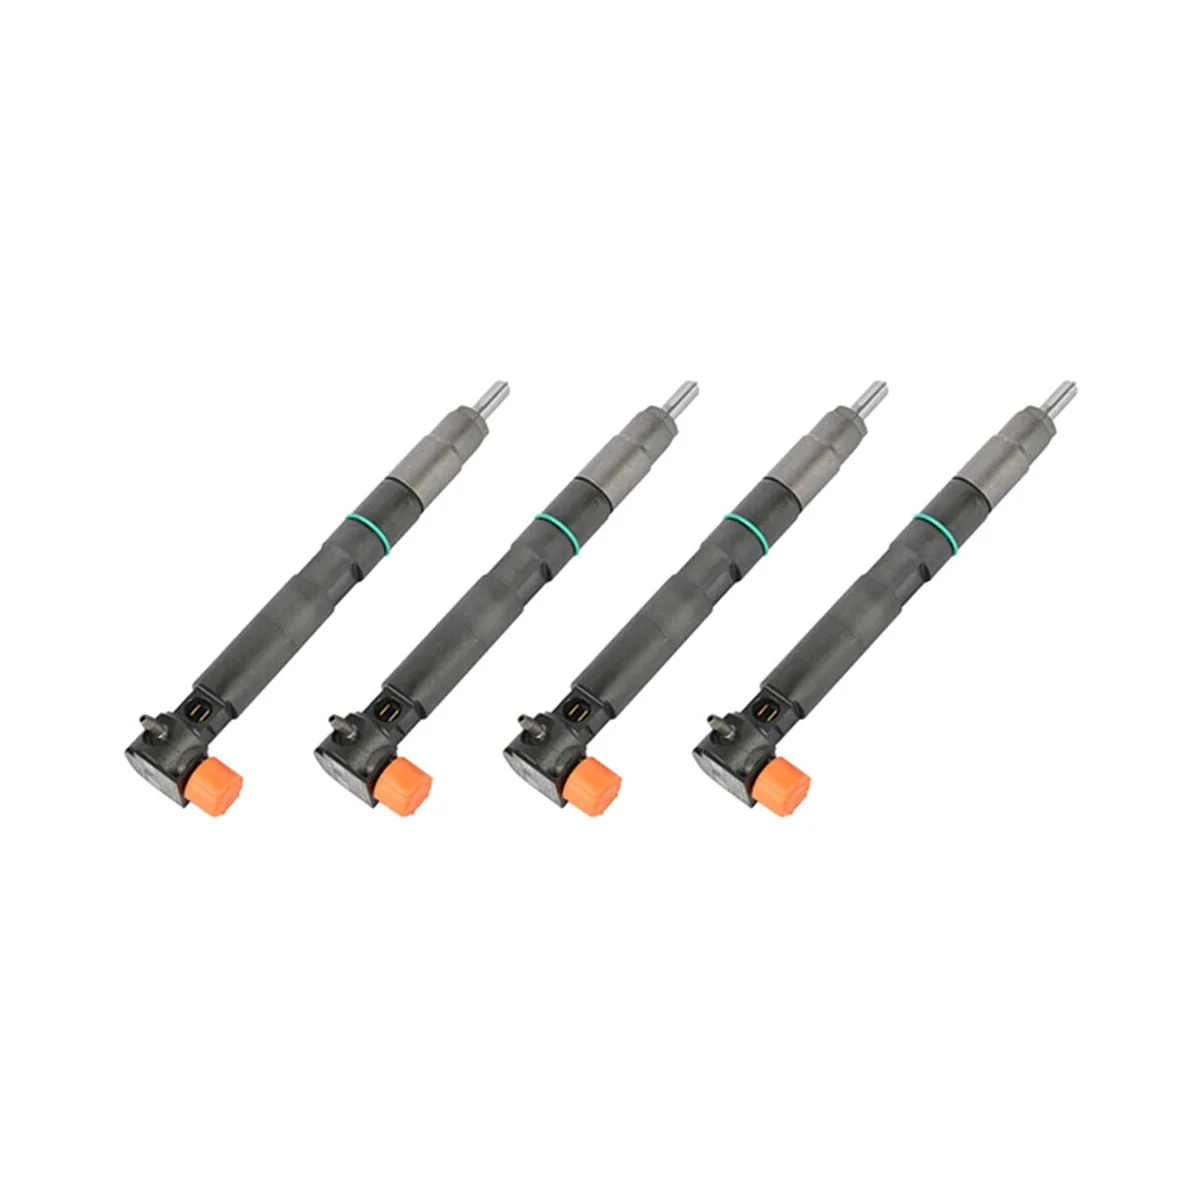 

4PCS New Fuel Injector for Bobcat / Doosan Teir 4 D18 & D24 28337917 400903-00074D 7275454